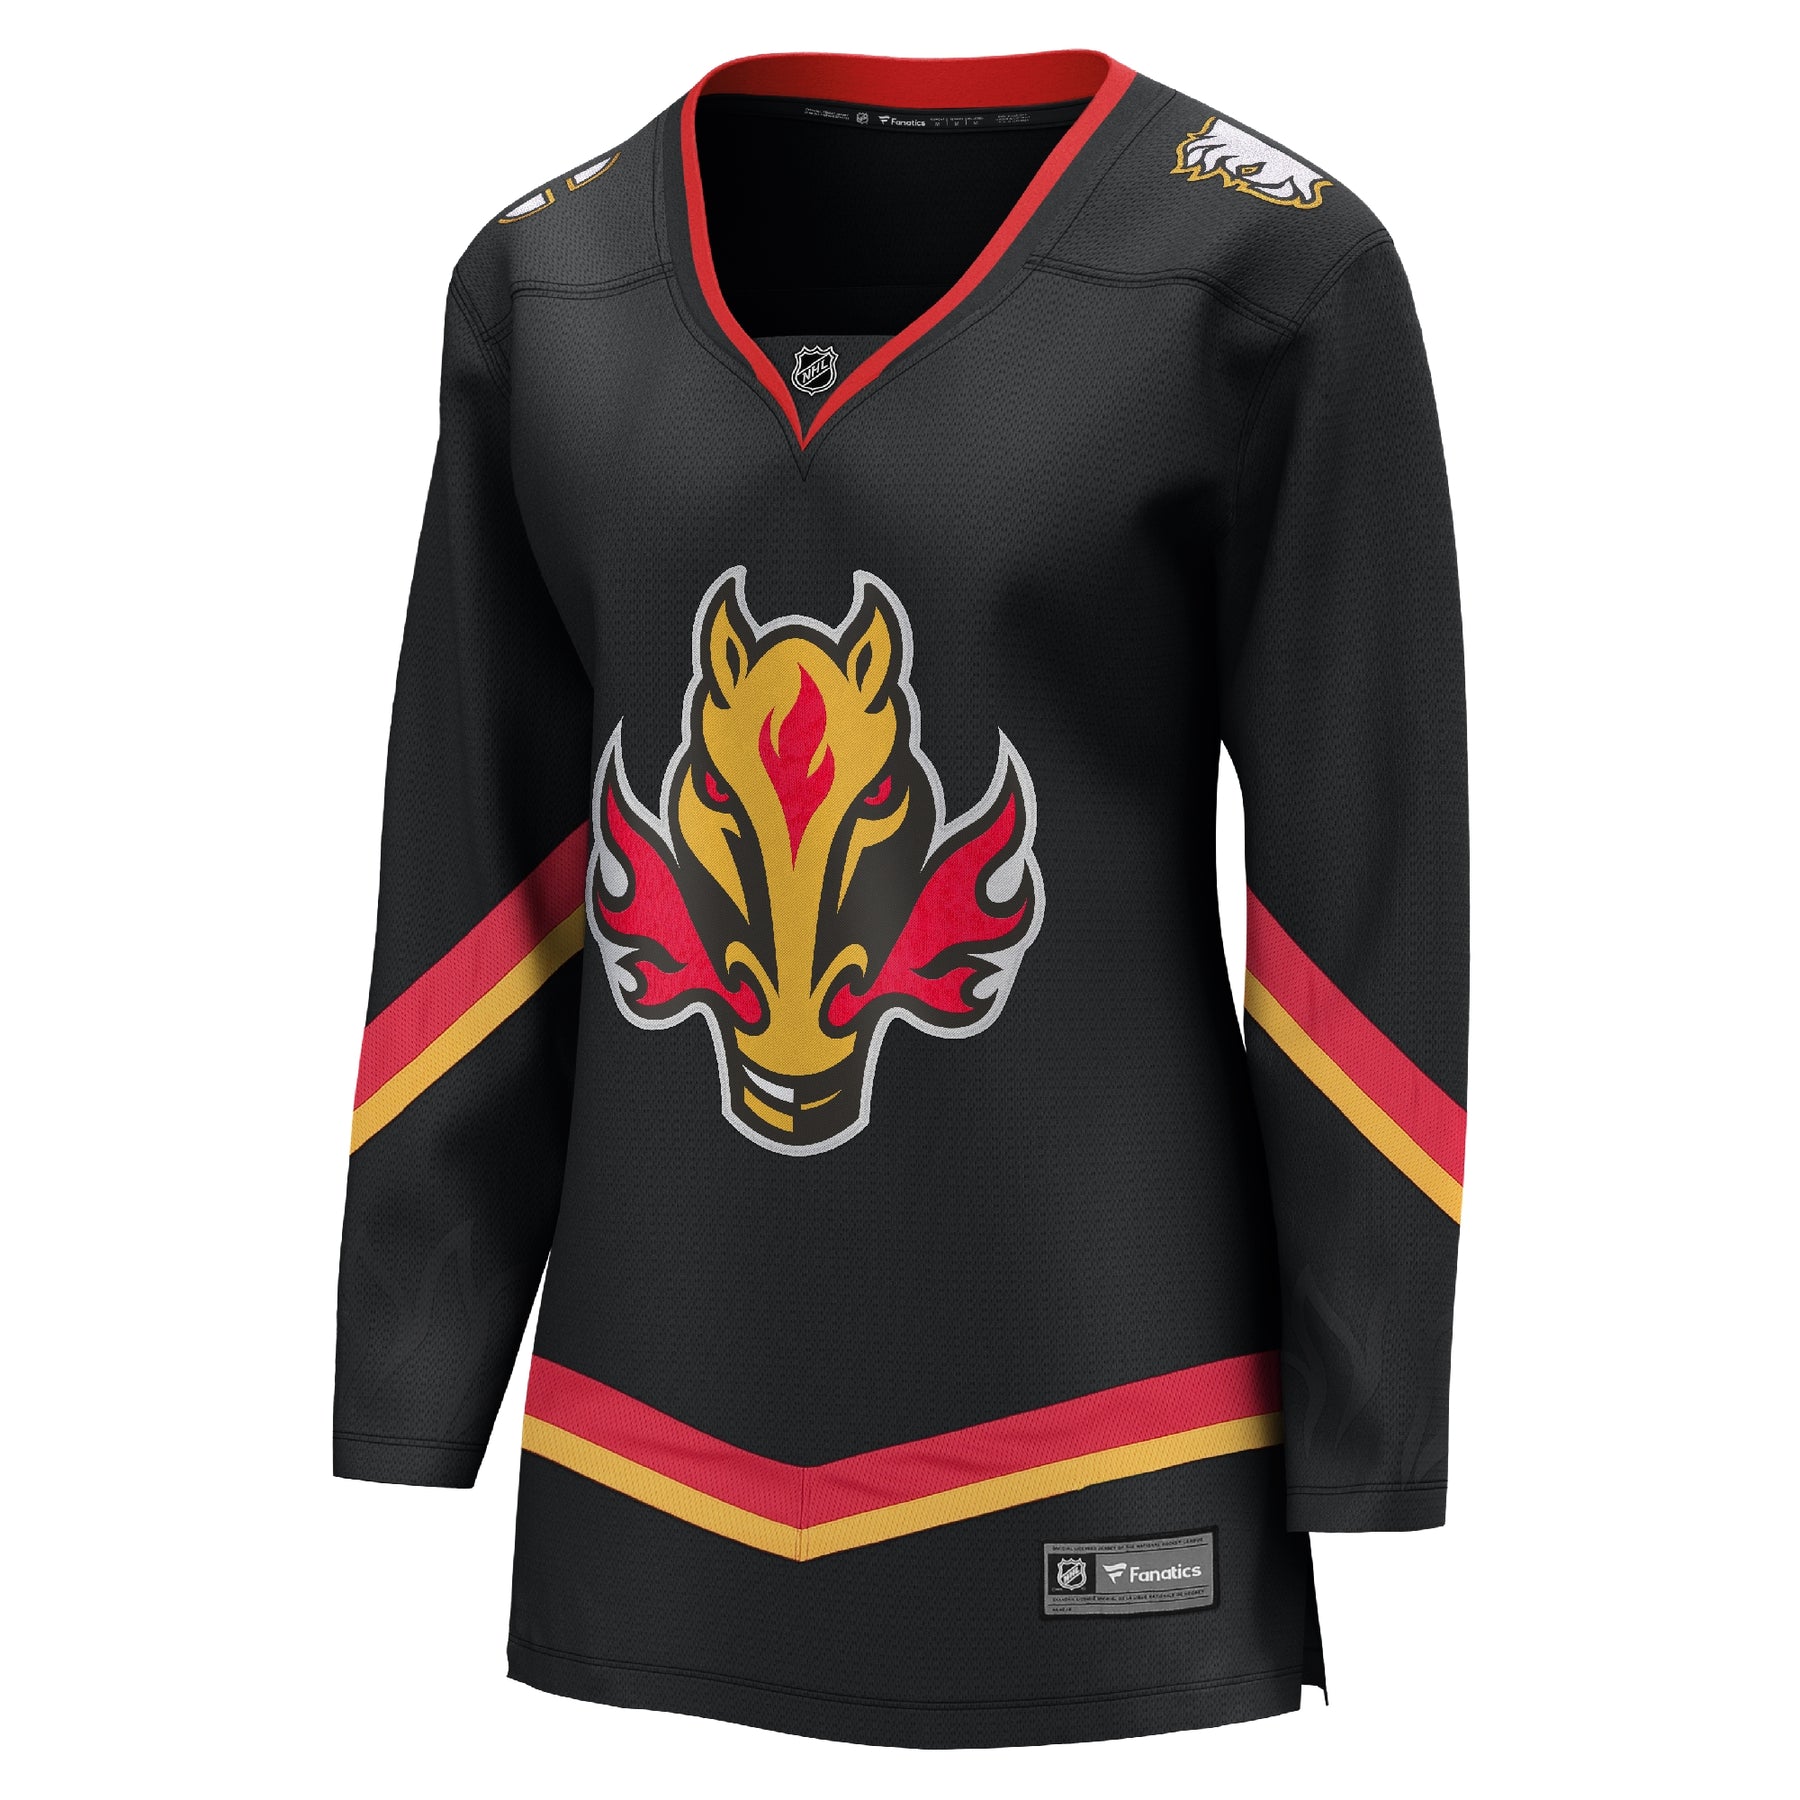 Calgary Flames Jerseys, Flames Adidas Jerseys, Flames Reverse Retro  Jerseys, Breakaway Jerseys, Flames Hockey Jerseys